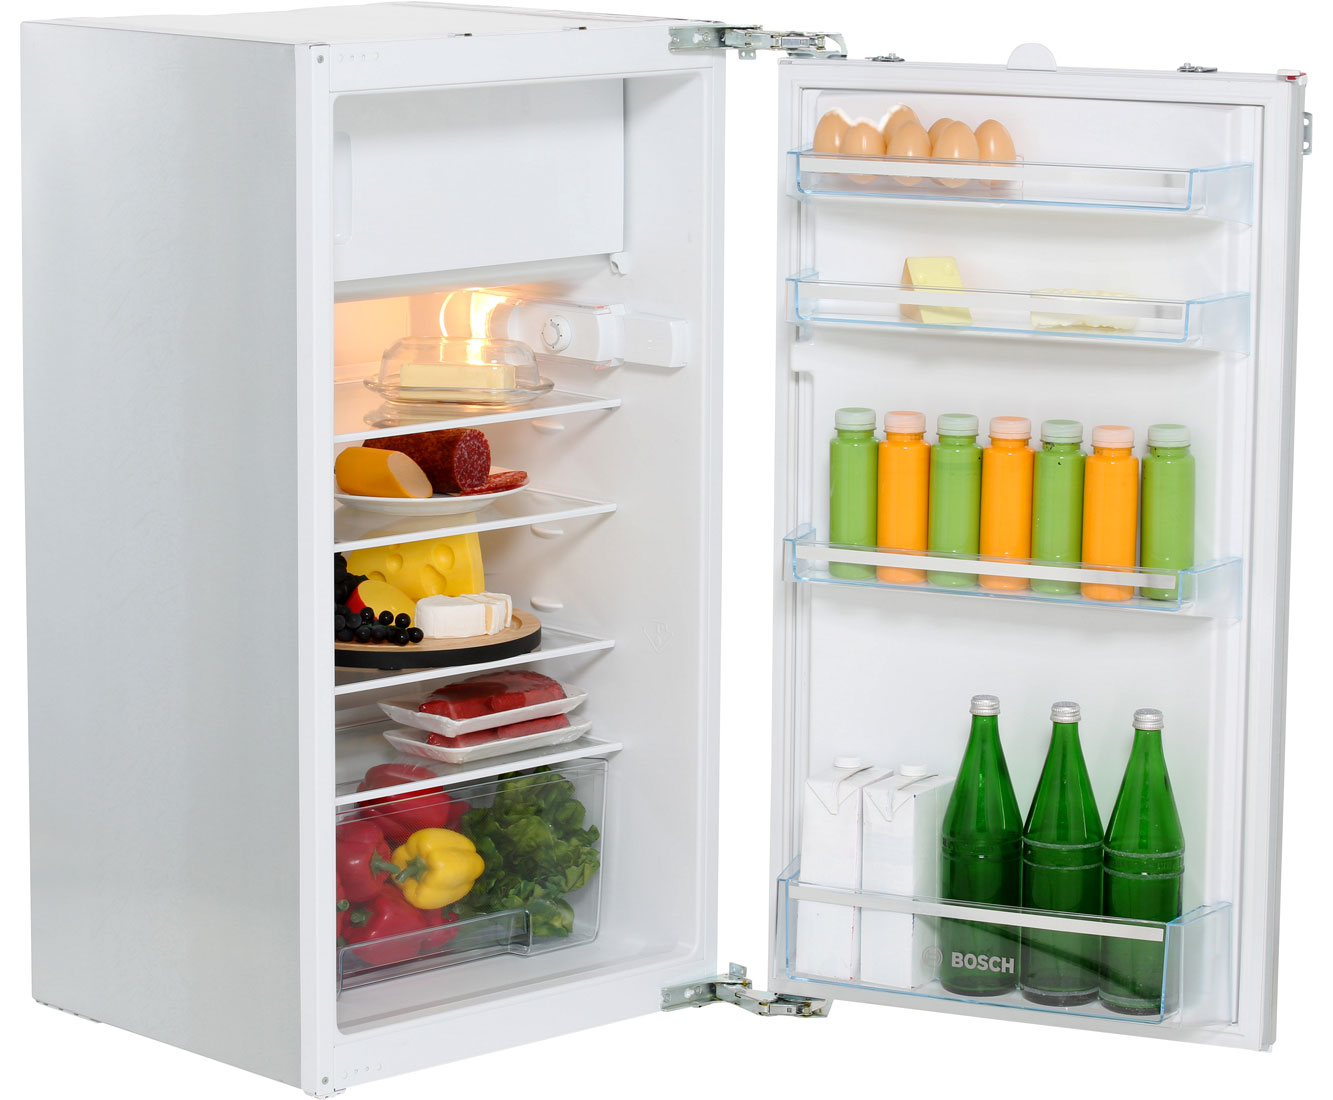 Bosch KIL20V51 inbouw koelkast restant model met vriesvak online kopen